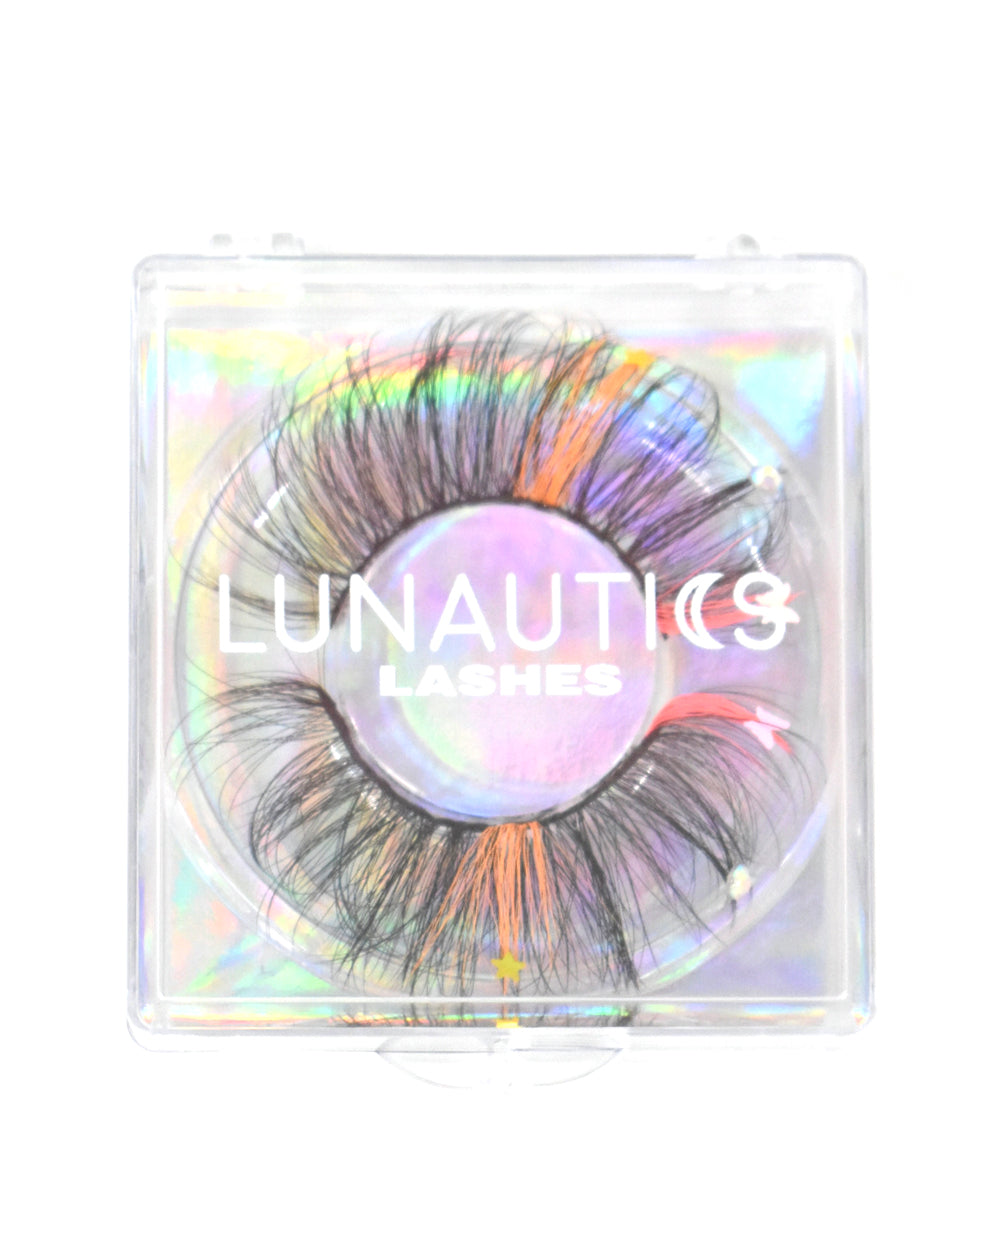 Sorbet Sparkle- Faux Mink Glam Glitter &amp; Rhinestone Eyelashes - Lunautics False Eyelashes